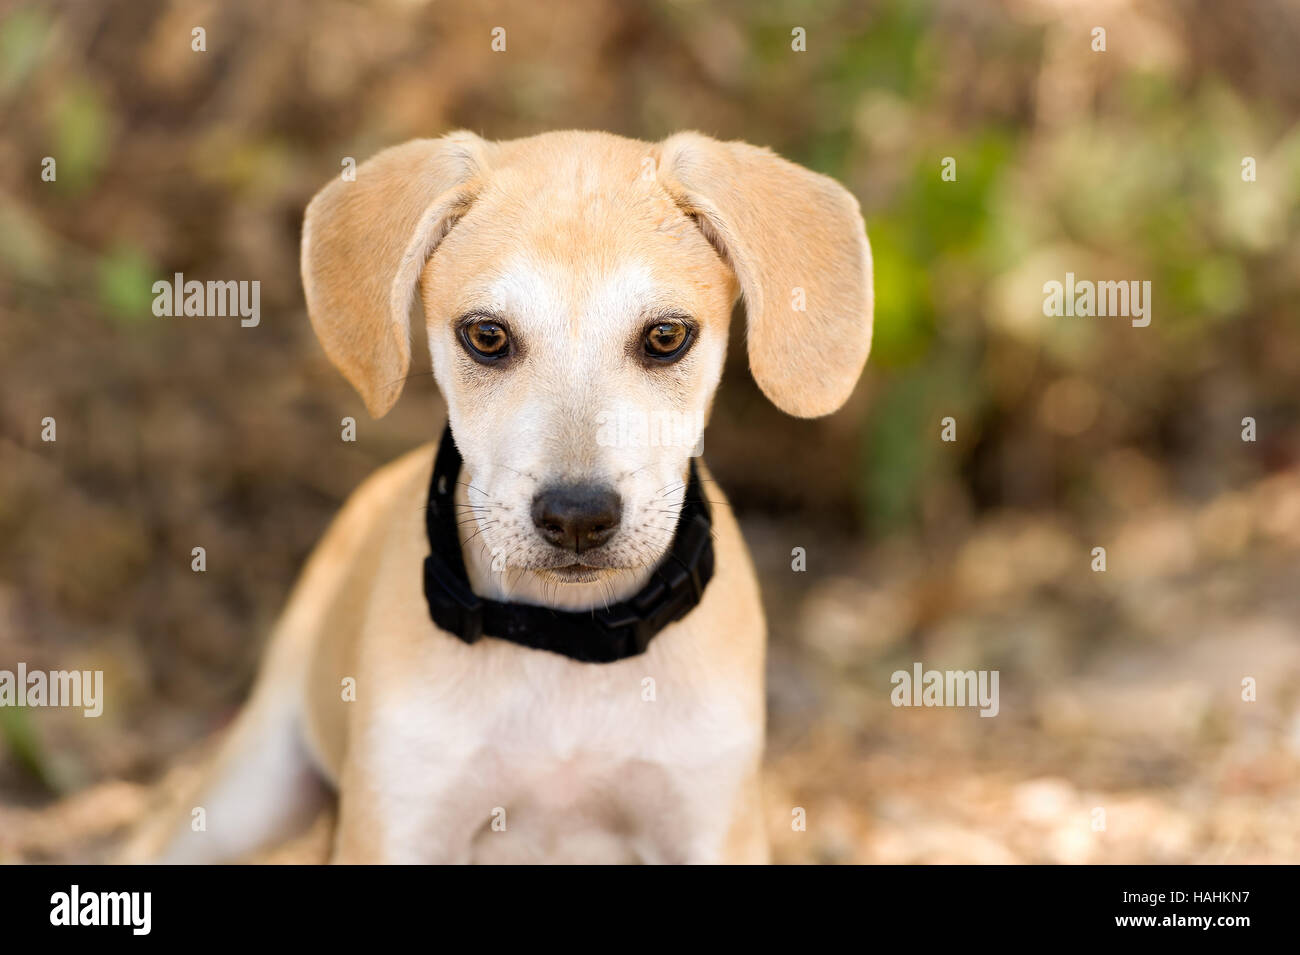 Cute puppy dog est un adorable petit chiot vous regarde avec ses grands yeux bruns. Banque D'Images